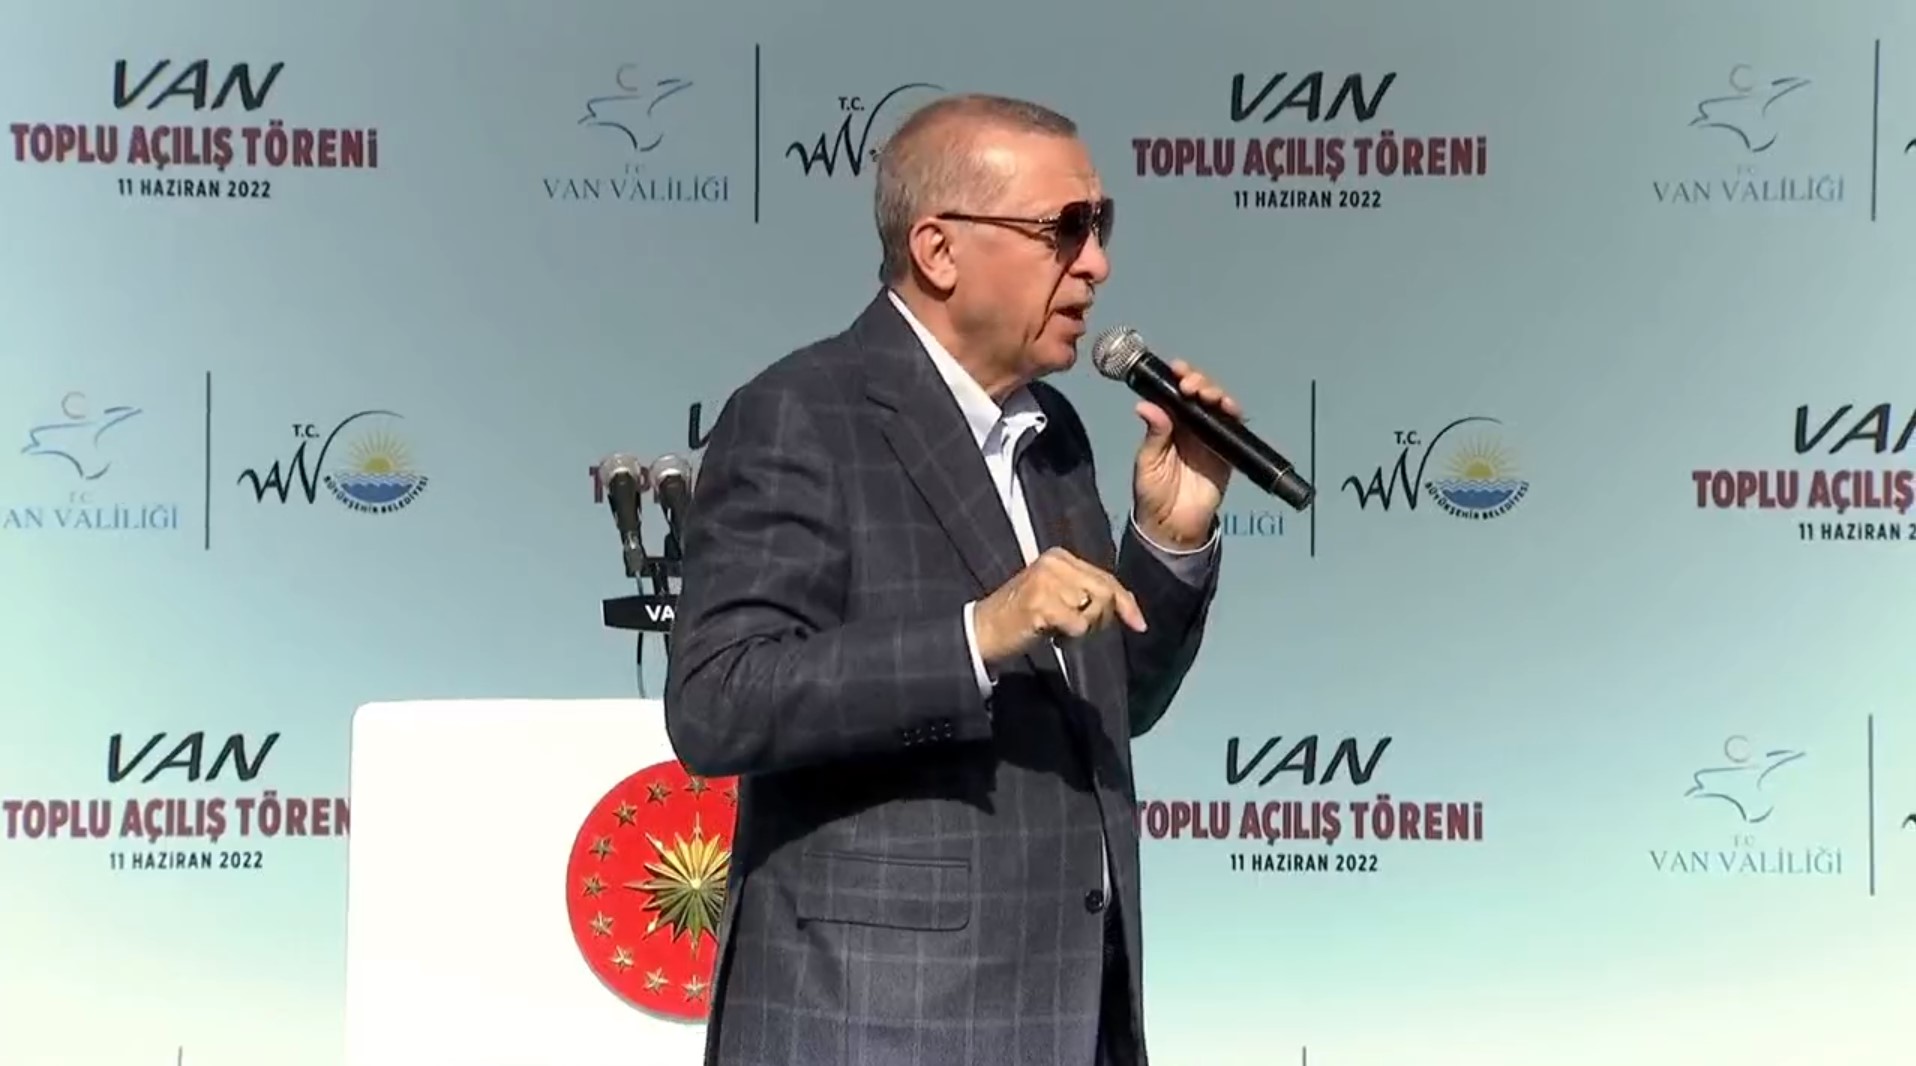 Cumhurbaşkanı Erdoğan, Van'da toplu açılış töreninde konuştu! Birileri bölücülük naraları atarken biz kardeşlik türkülerini söyledik.